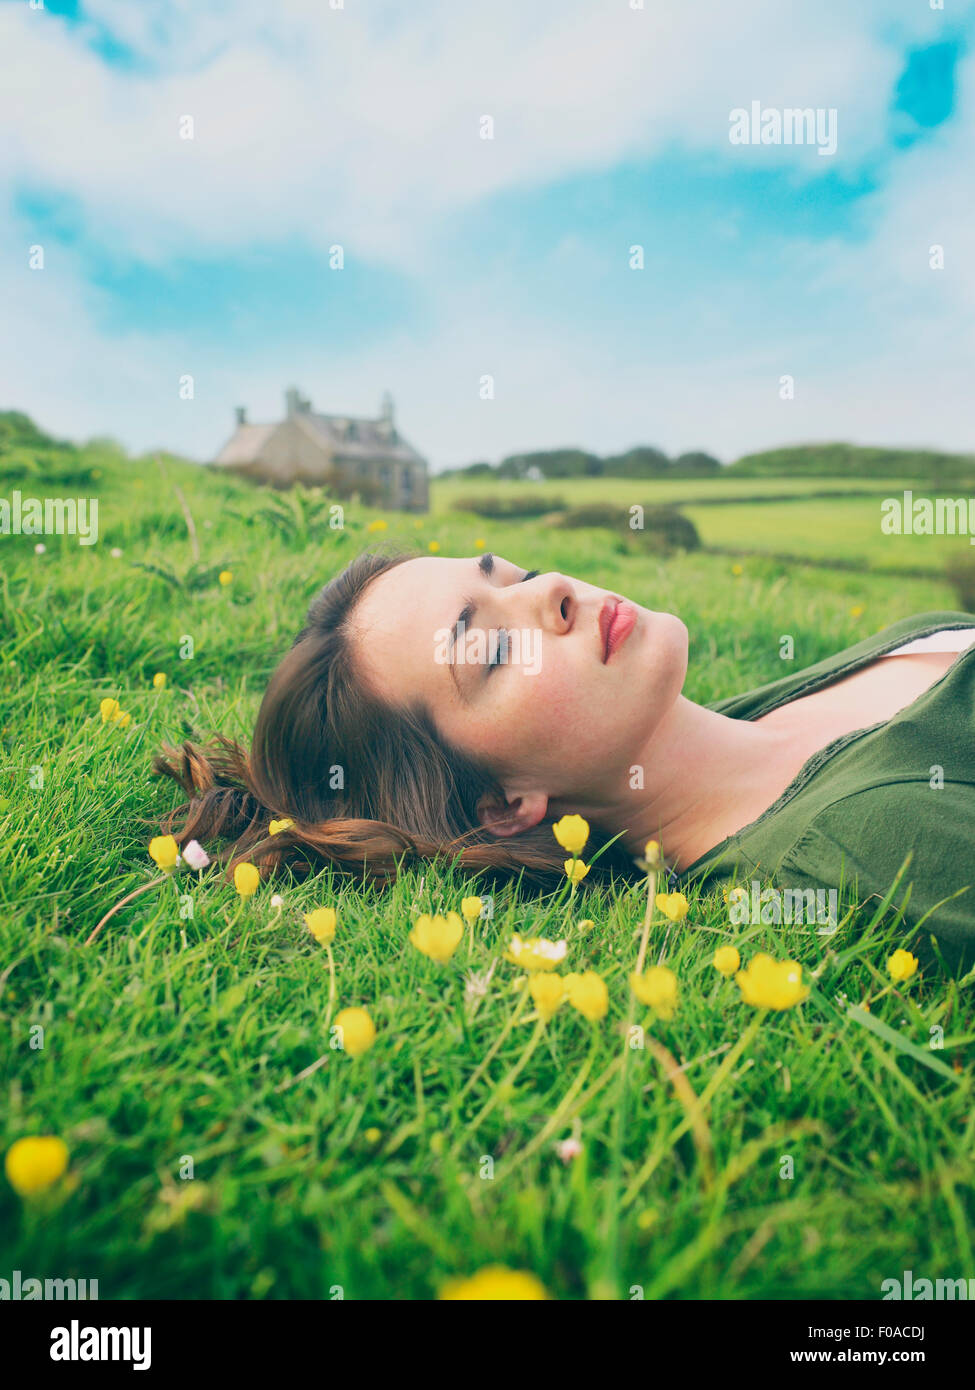 Les jeunes femmes avec les yeux fermé couché dans l'herbe de renoncule Banque D'Images